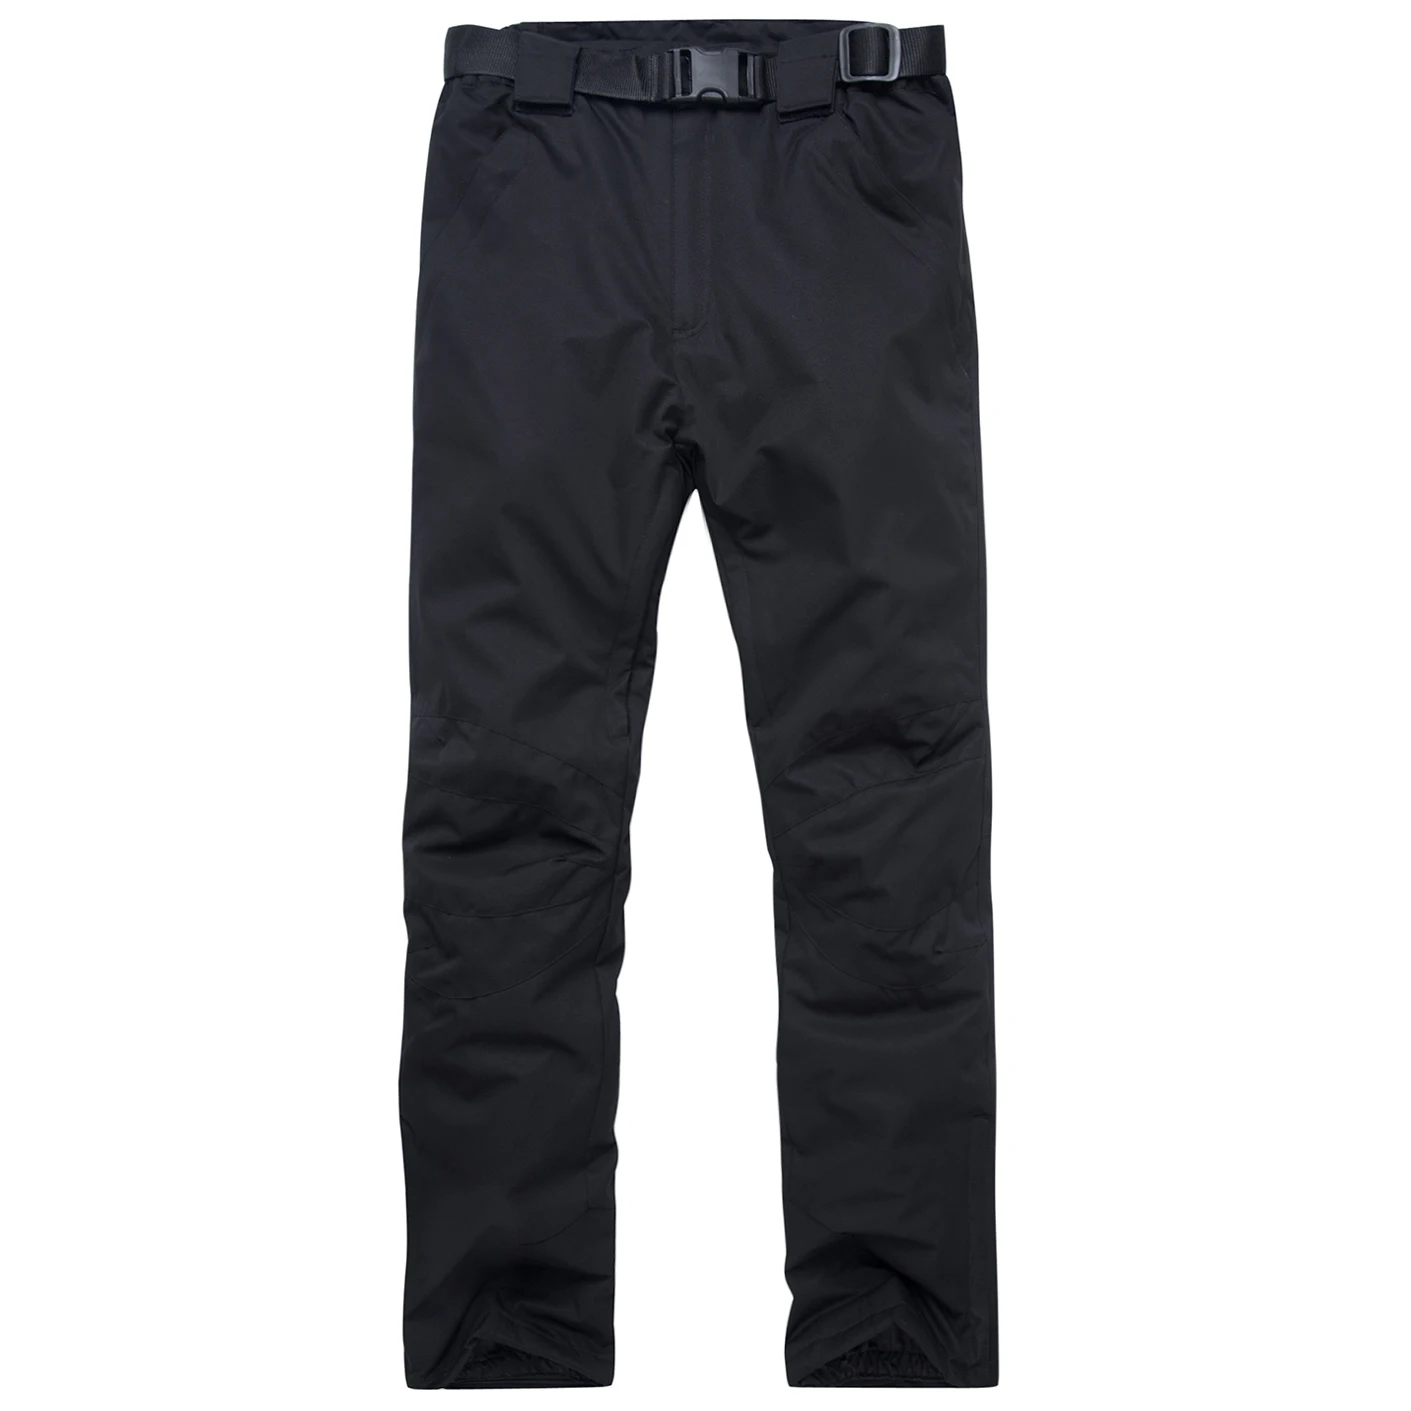 2019лыжные брюки мужские и женские уличные высококачественные ветрозащитные водонепроницаемые теплые парные зимние брюки зимние лыжные штаны для сноуборда брендовые